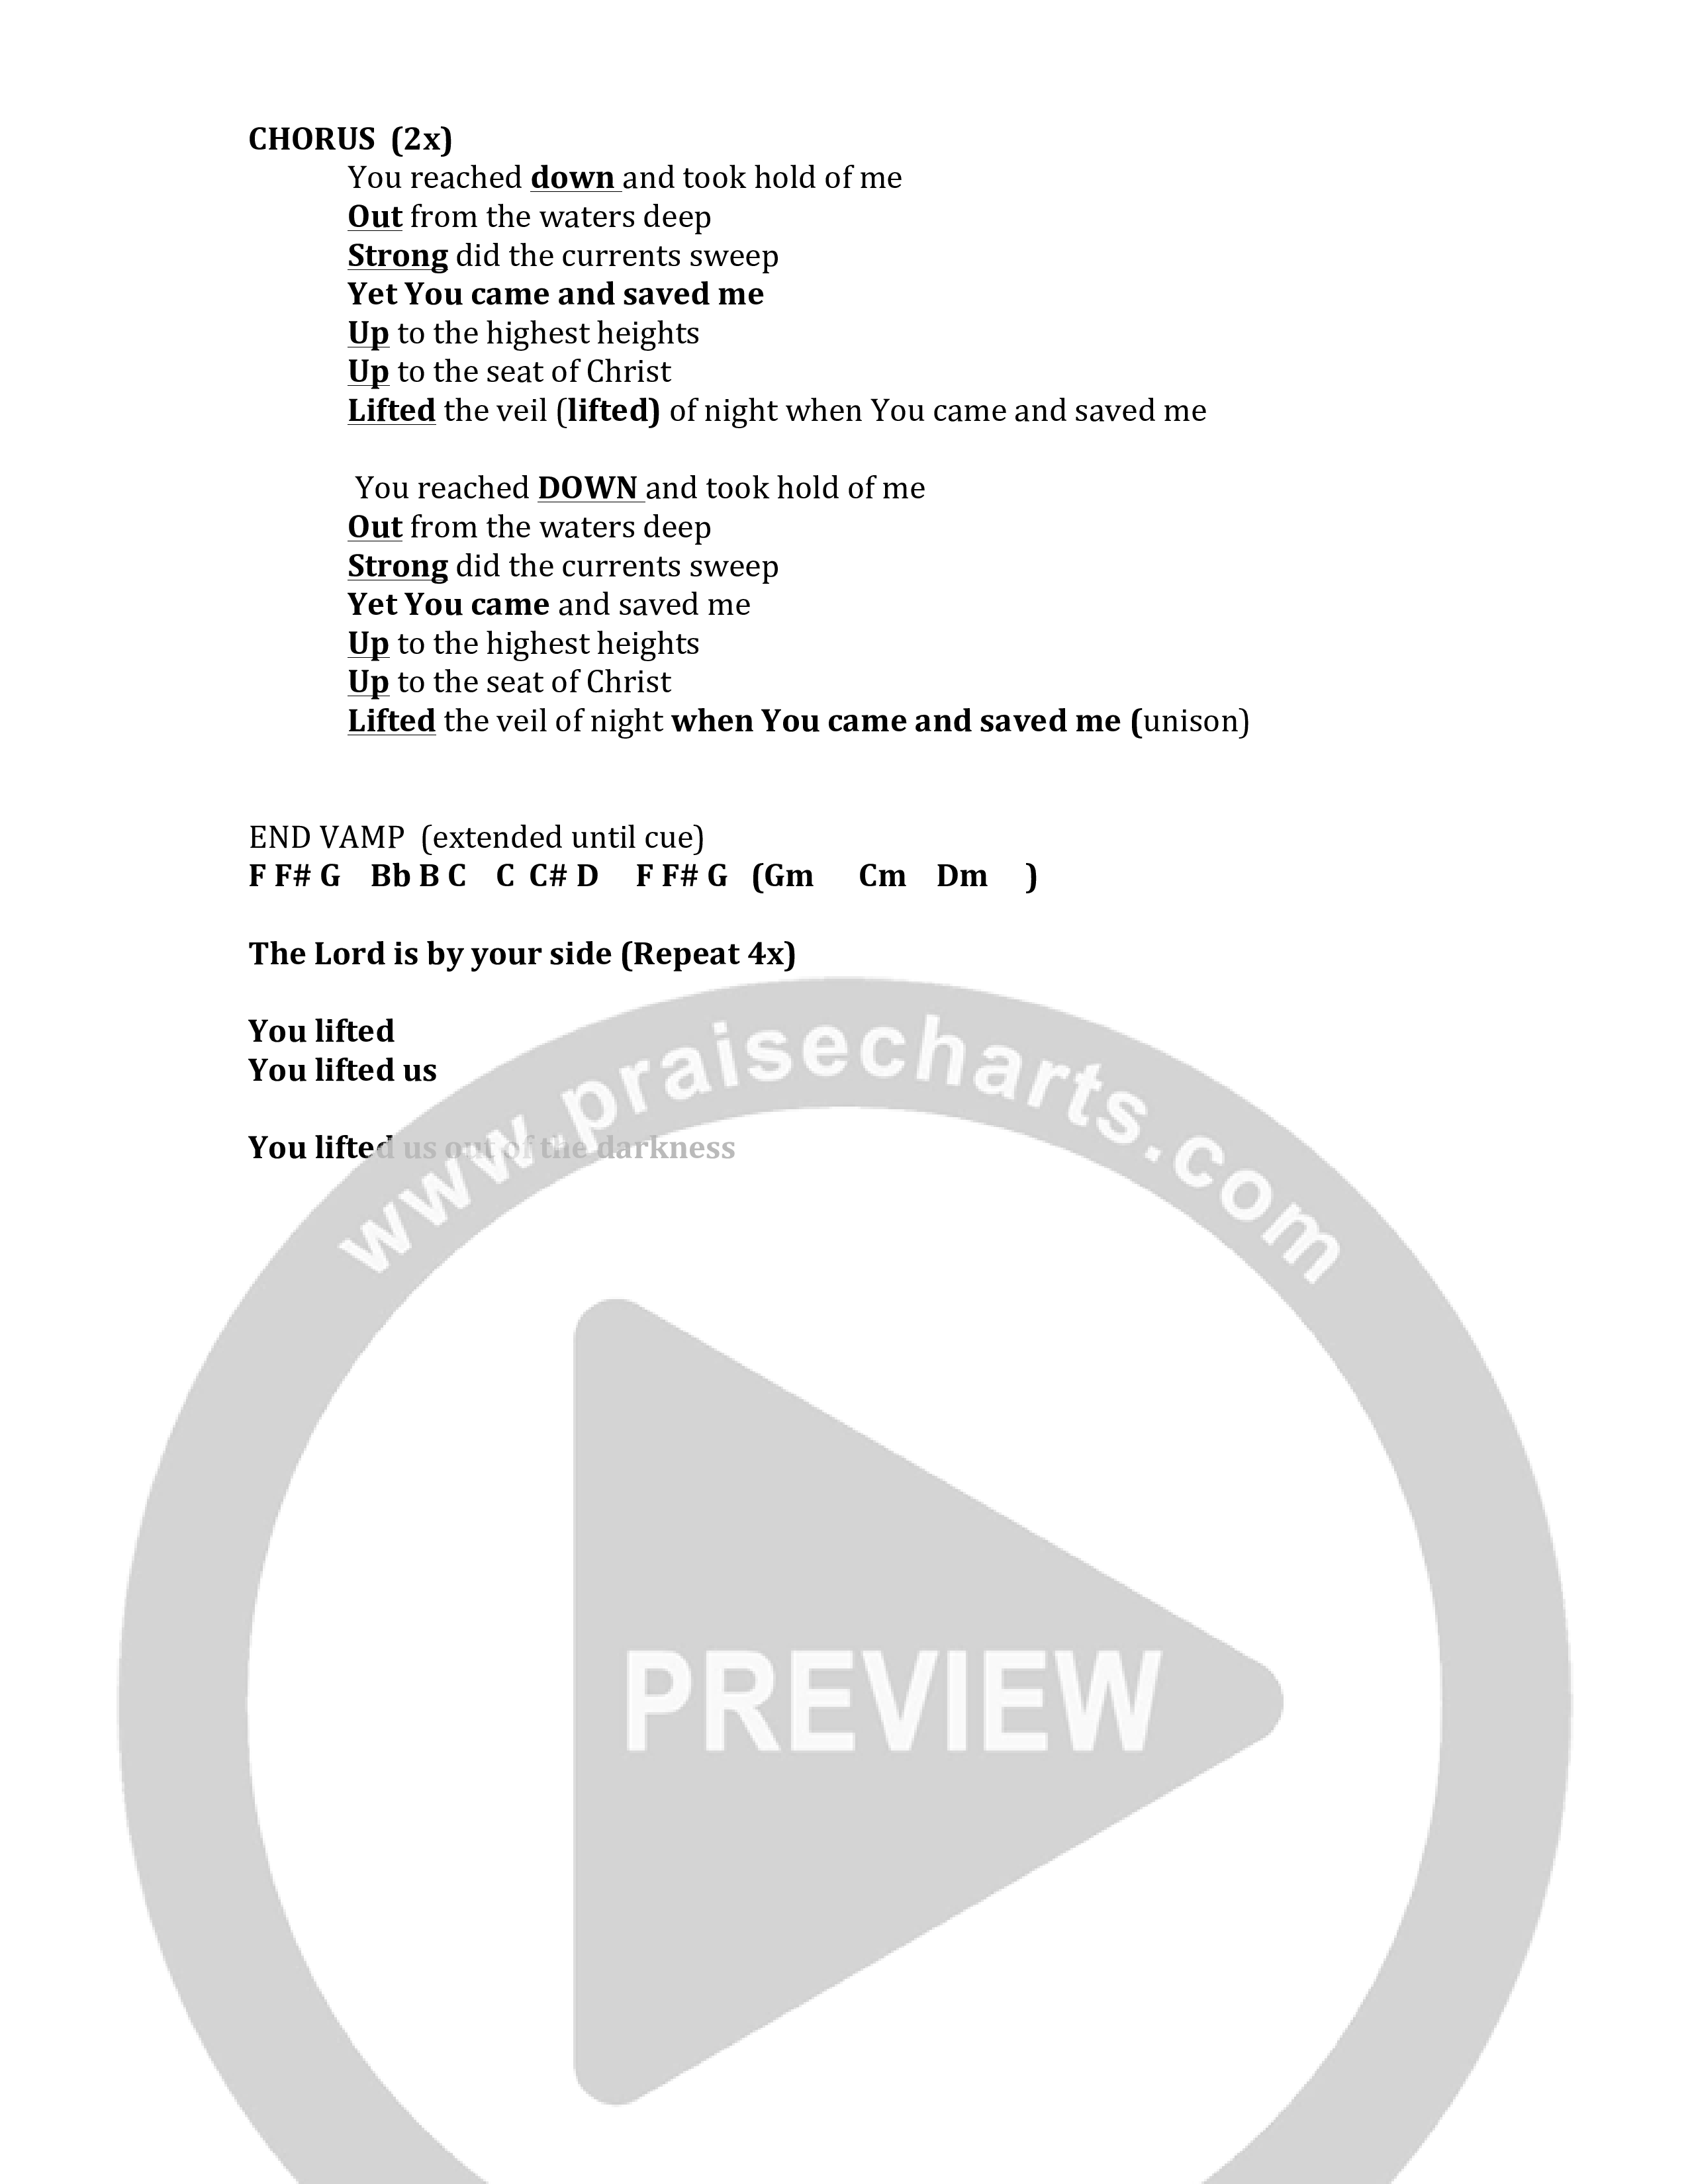 Took Hold (Psalm 18) Chord Chart (Mike Janzen / Dee Wilson)